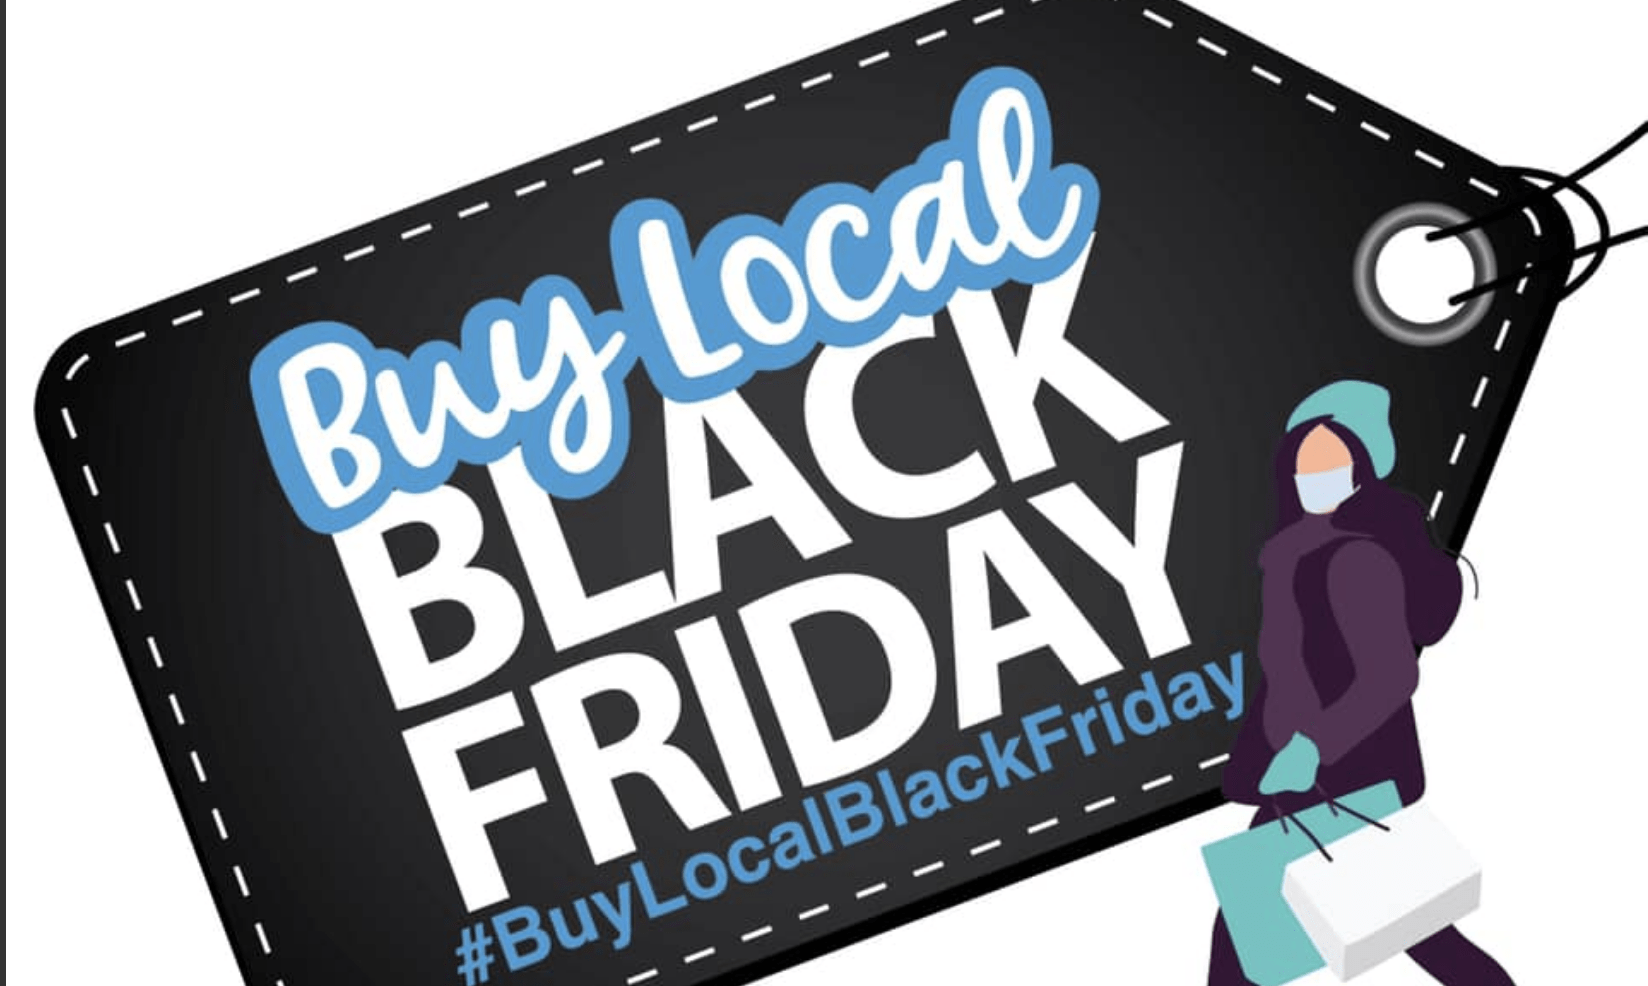 Buy Local Black Friday #BuyLocalBlackFriday